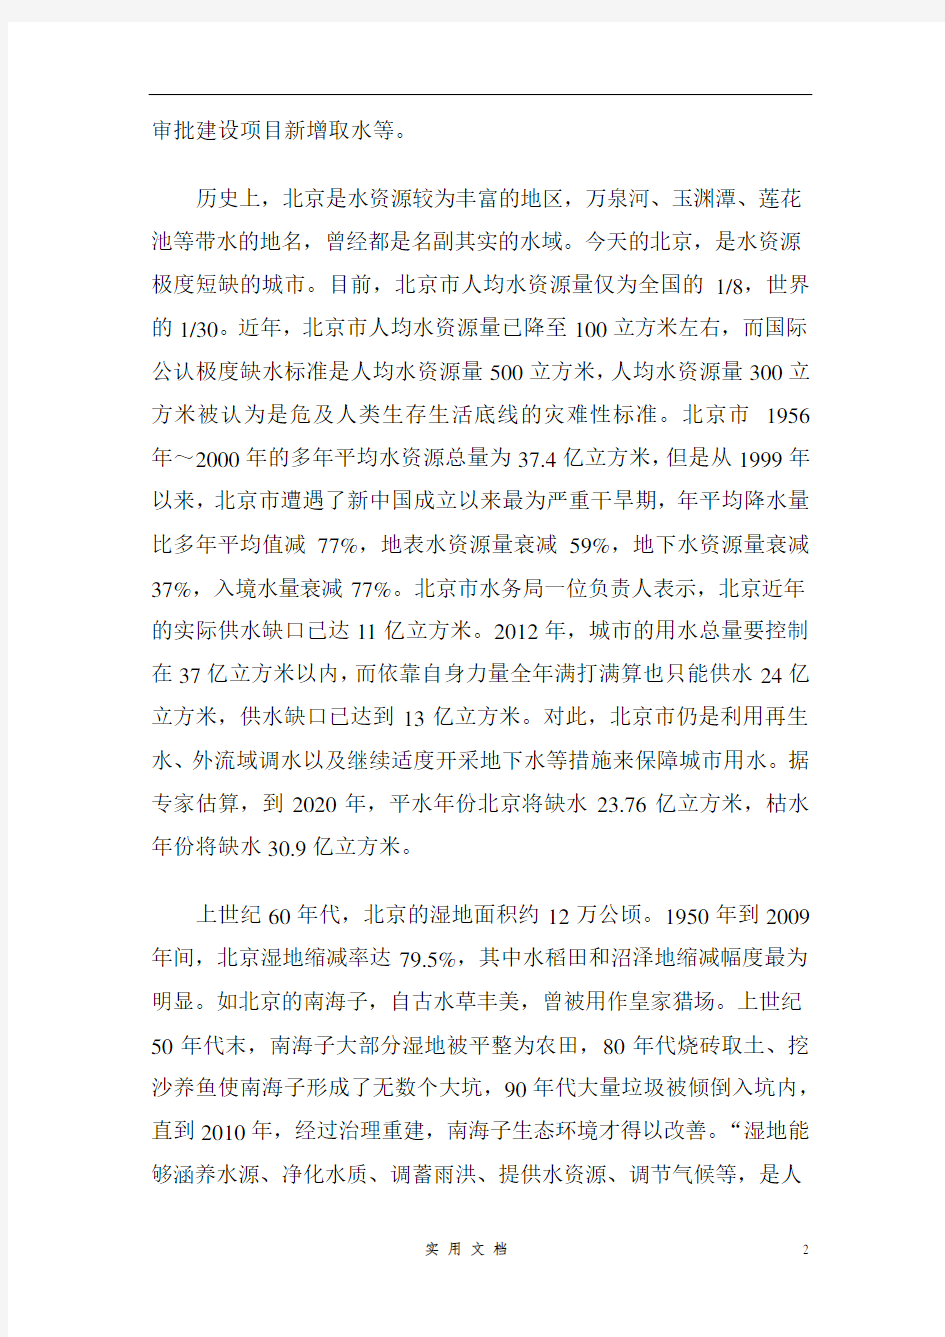 2014年上半年北京市公务员考试《申论》真题(含答案解析)